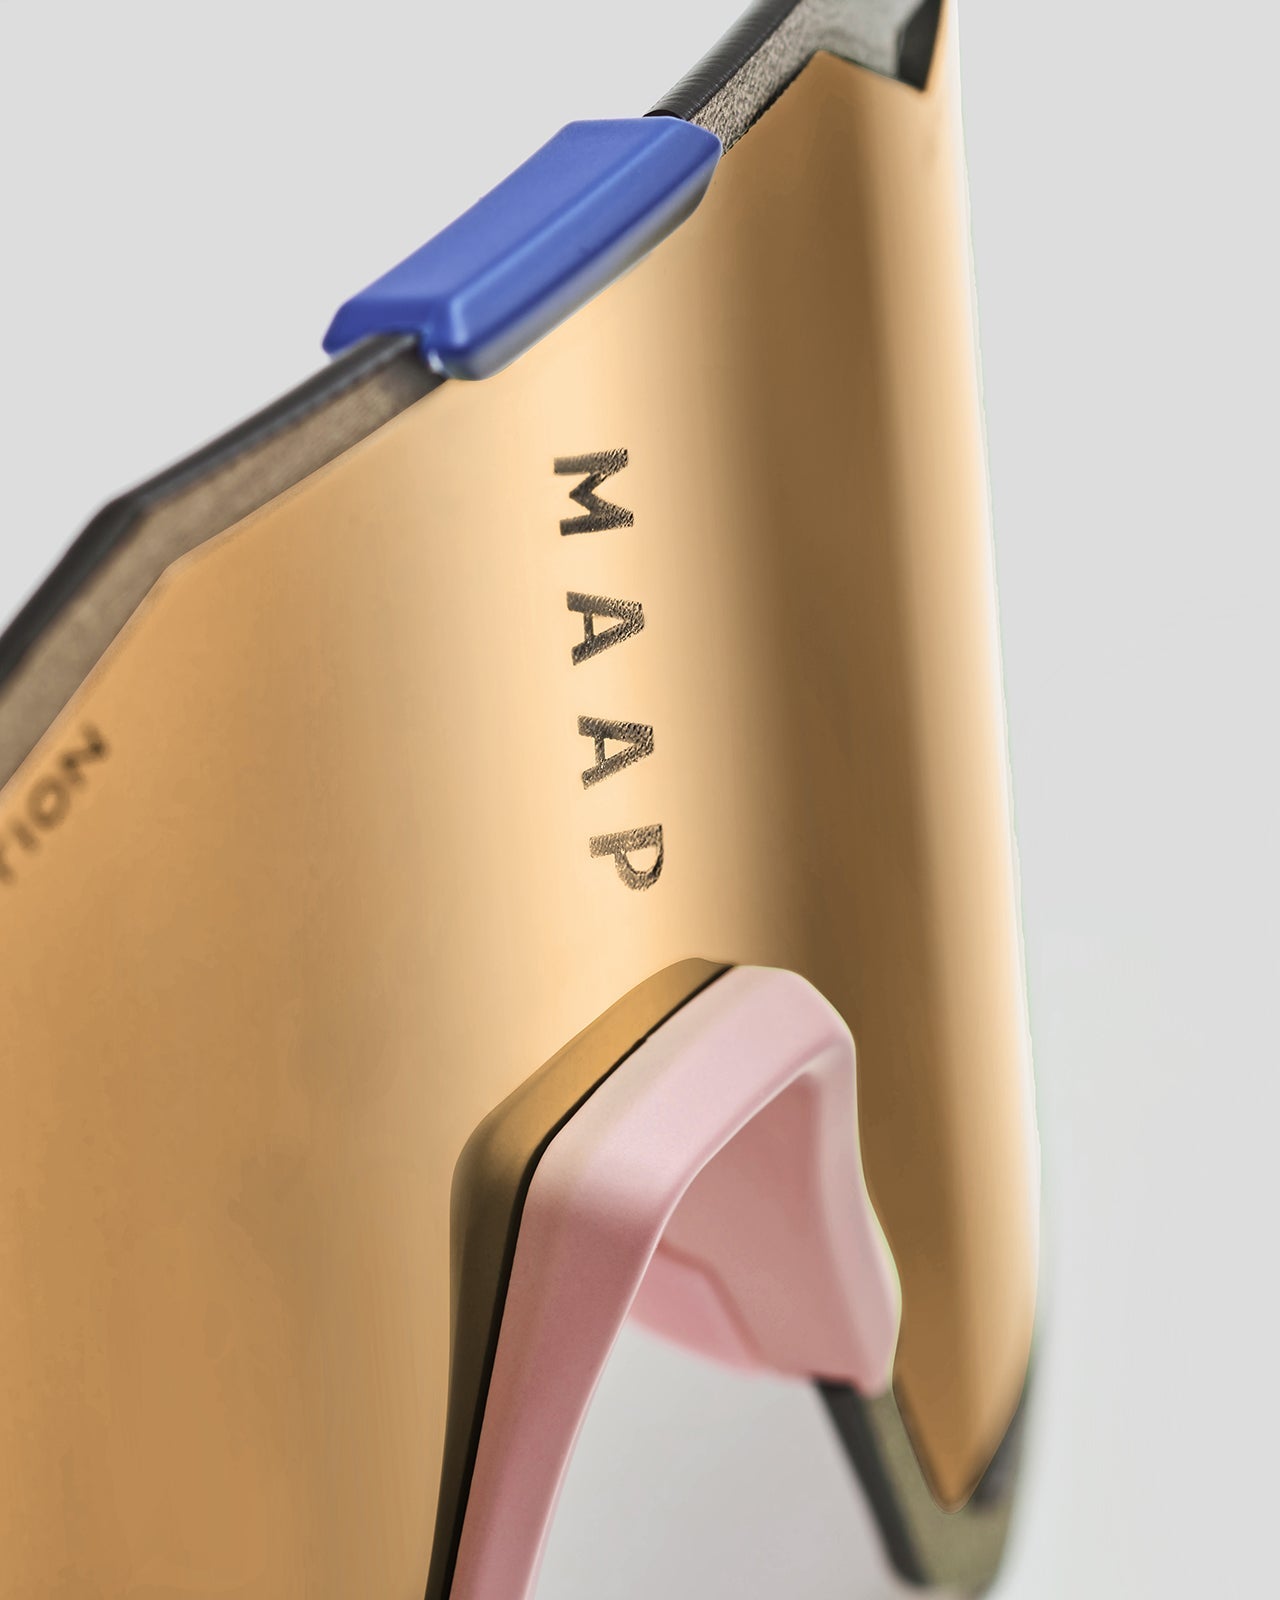 MAAP x 100% Hypercraft Sunglasses - Copper